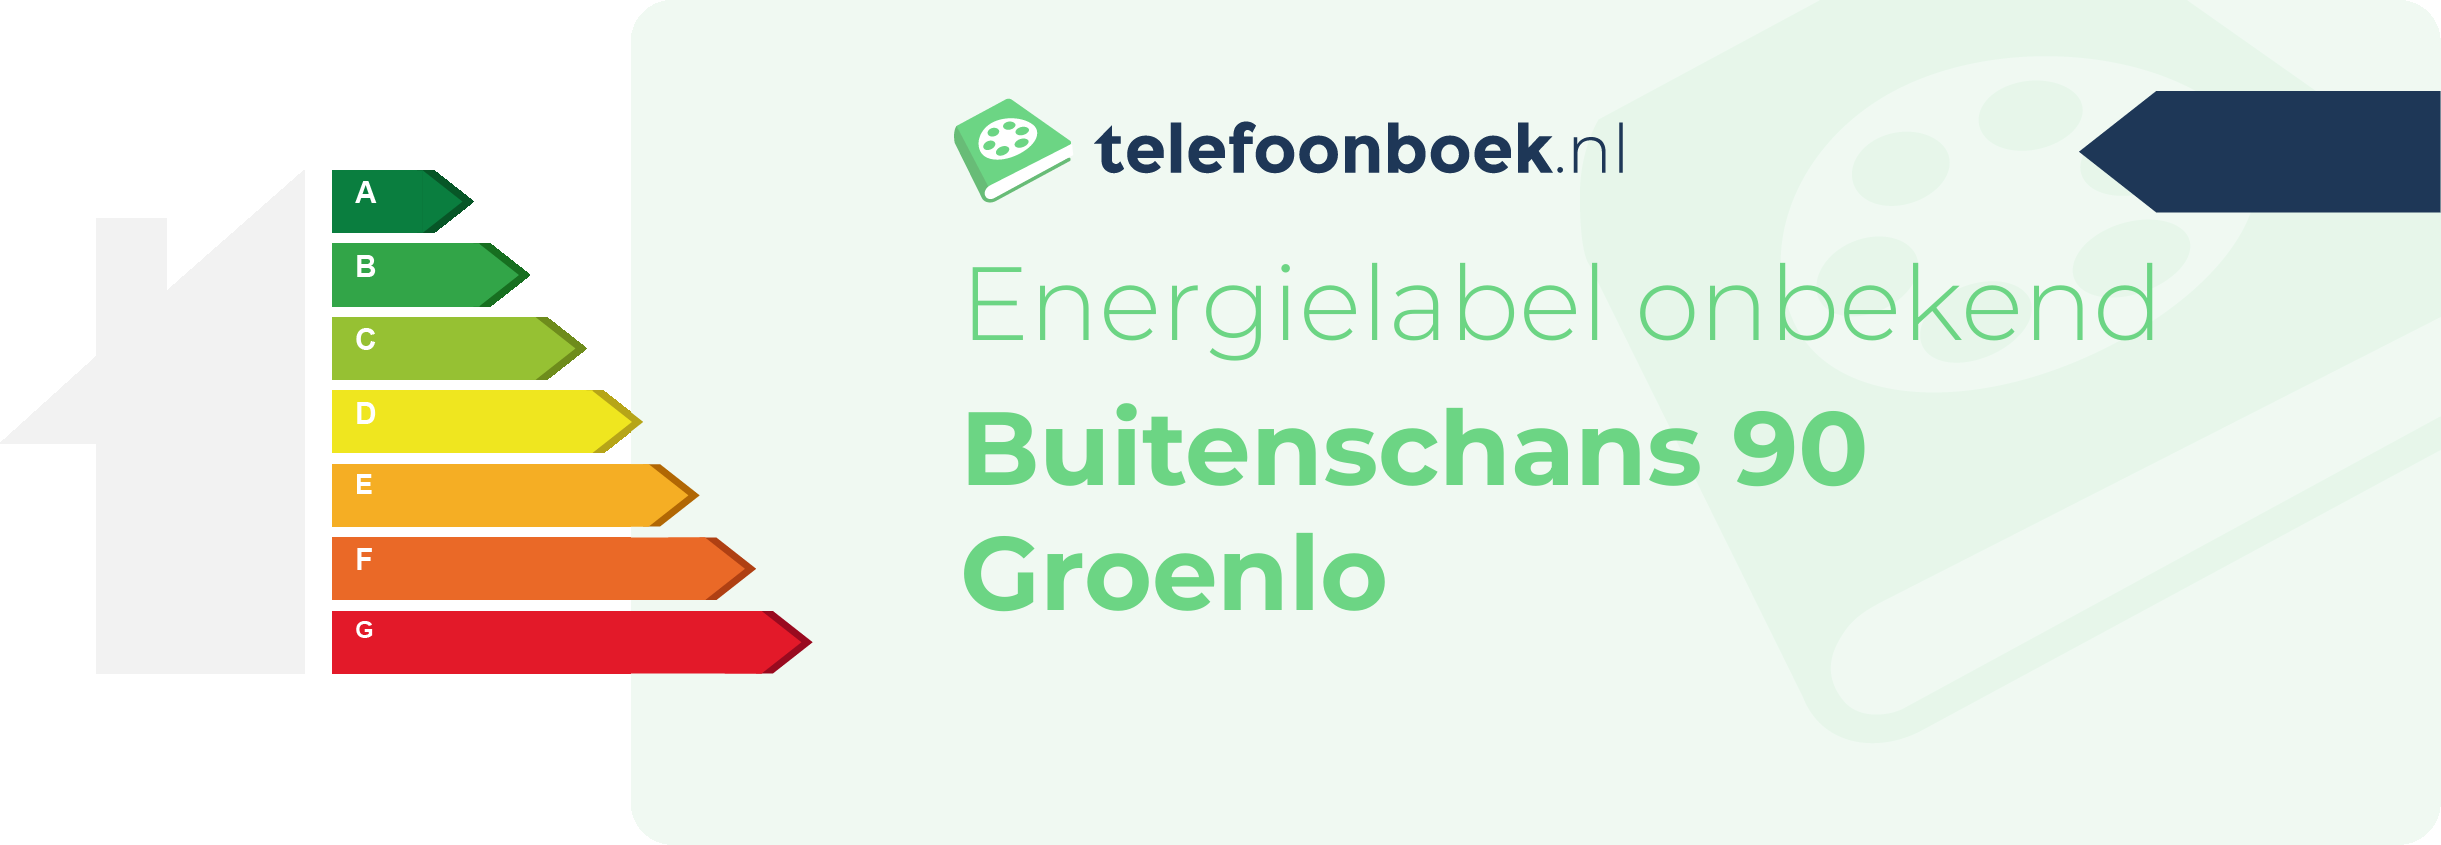 Energielabel Buitenschans 90 Groenlo